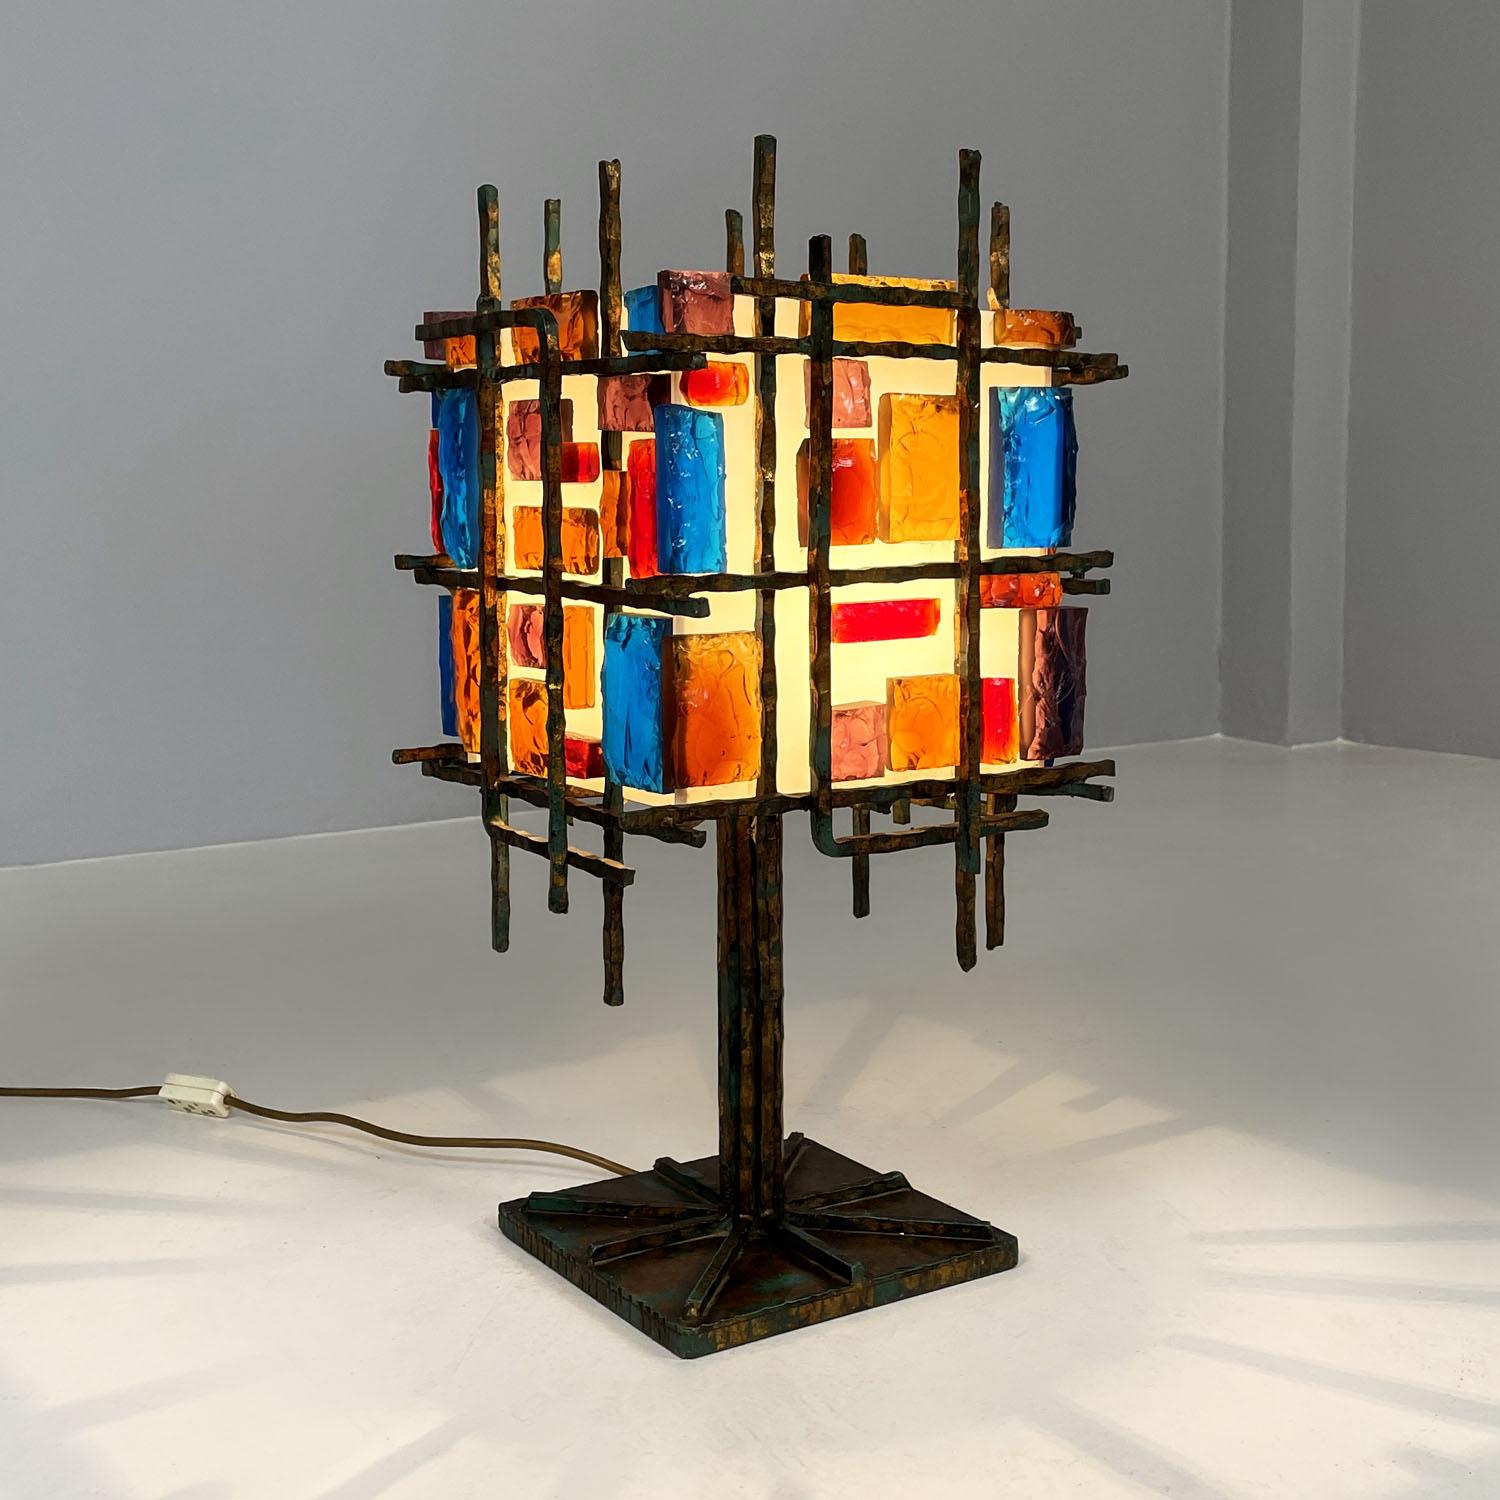 Lampe de table italienne brutaliste géométrique en laiton et verre coloré, années 1950
Lampe de table de style brutaliste. La base carrée et la structure principale sont en laiton, avec des formes géométriques et matérielles qui, surtout dans la